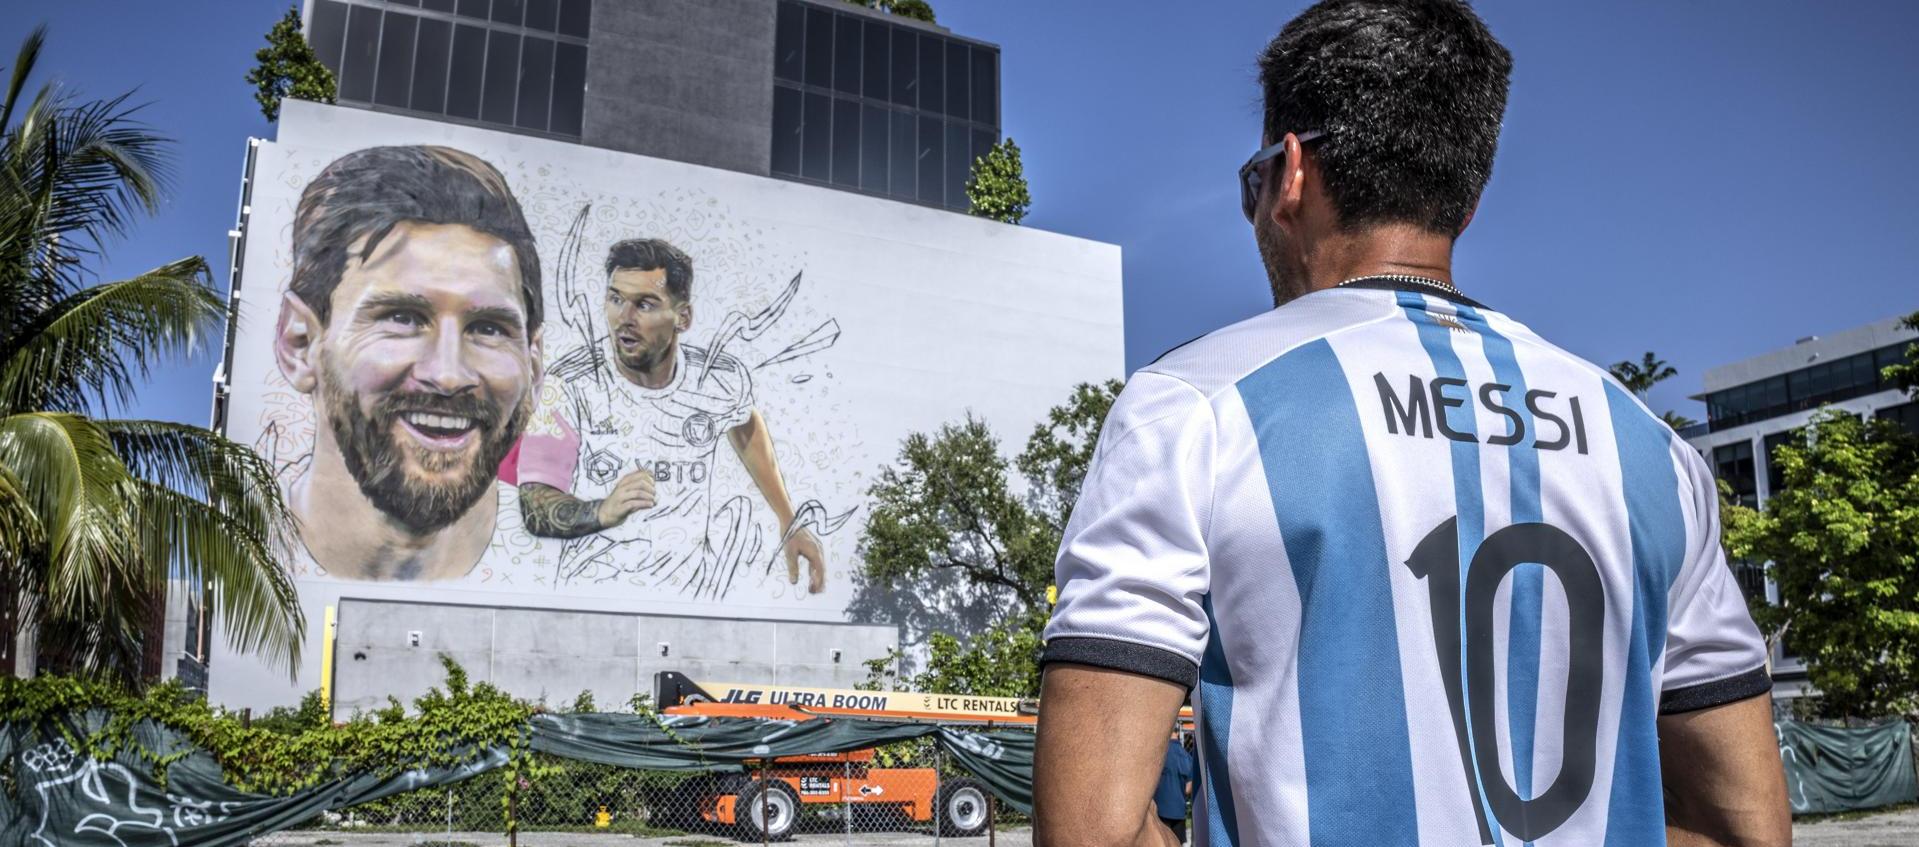 Mural de Messi en la ciudad de Miami. 